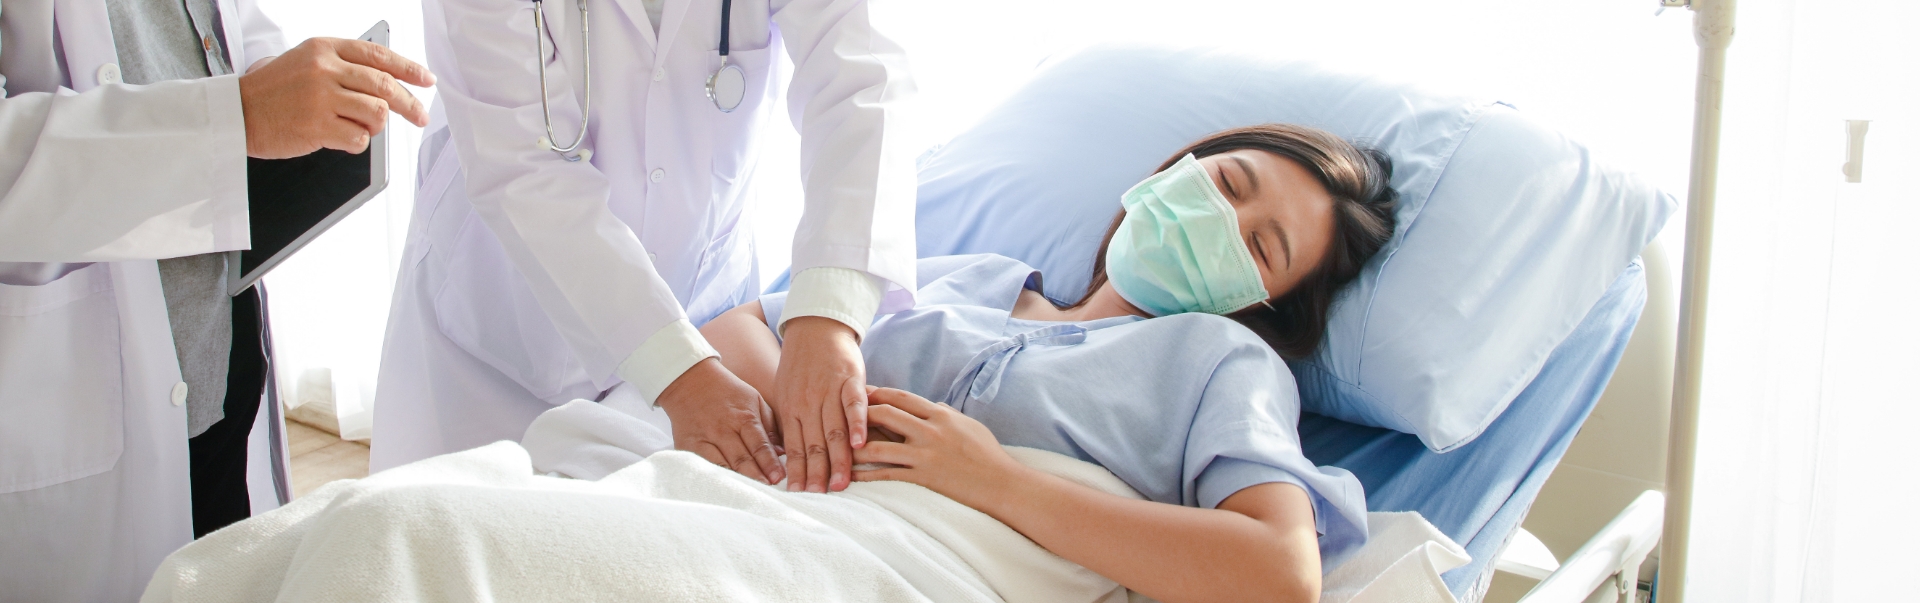 Ärztliche Fachperson untersucht im Bett liegende Person am Bauch, weitere ärztliche Person steht daneben mit Tablet